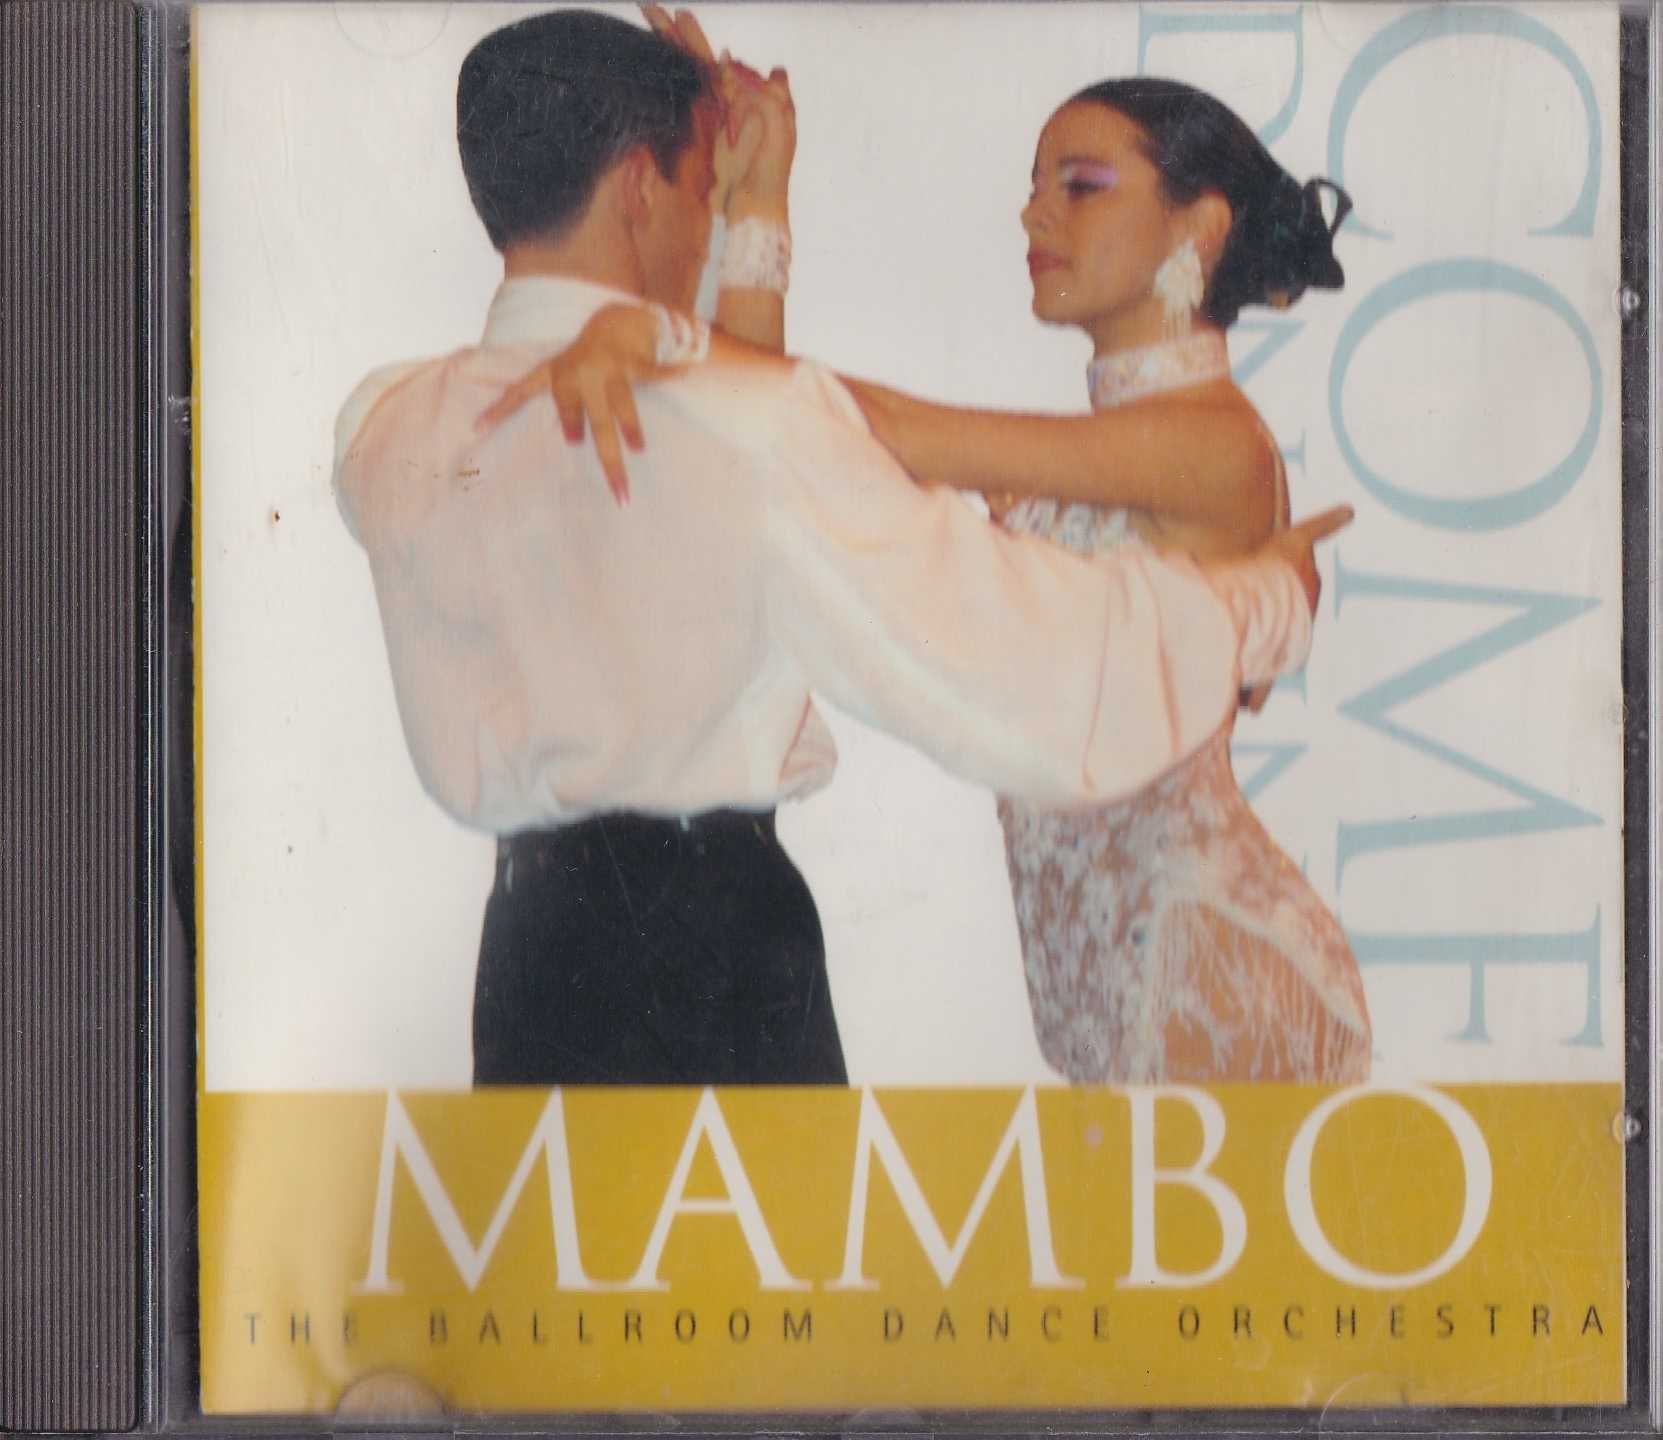 Płyta CD z melodiami tanecznymi w stylu mambo